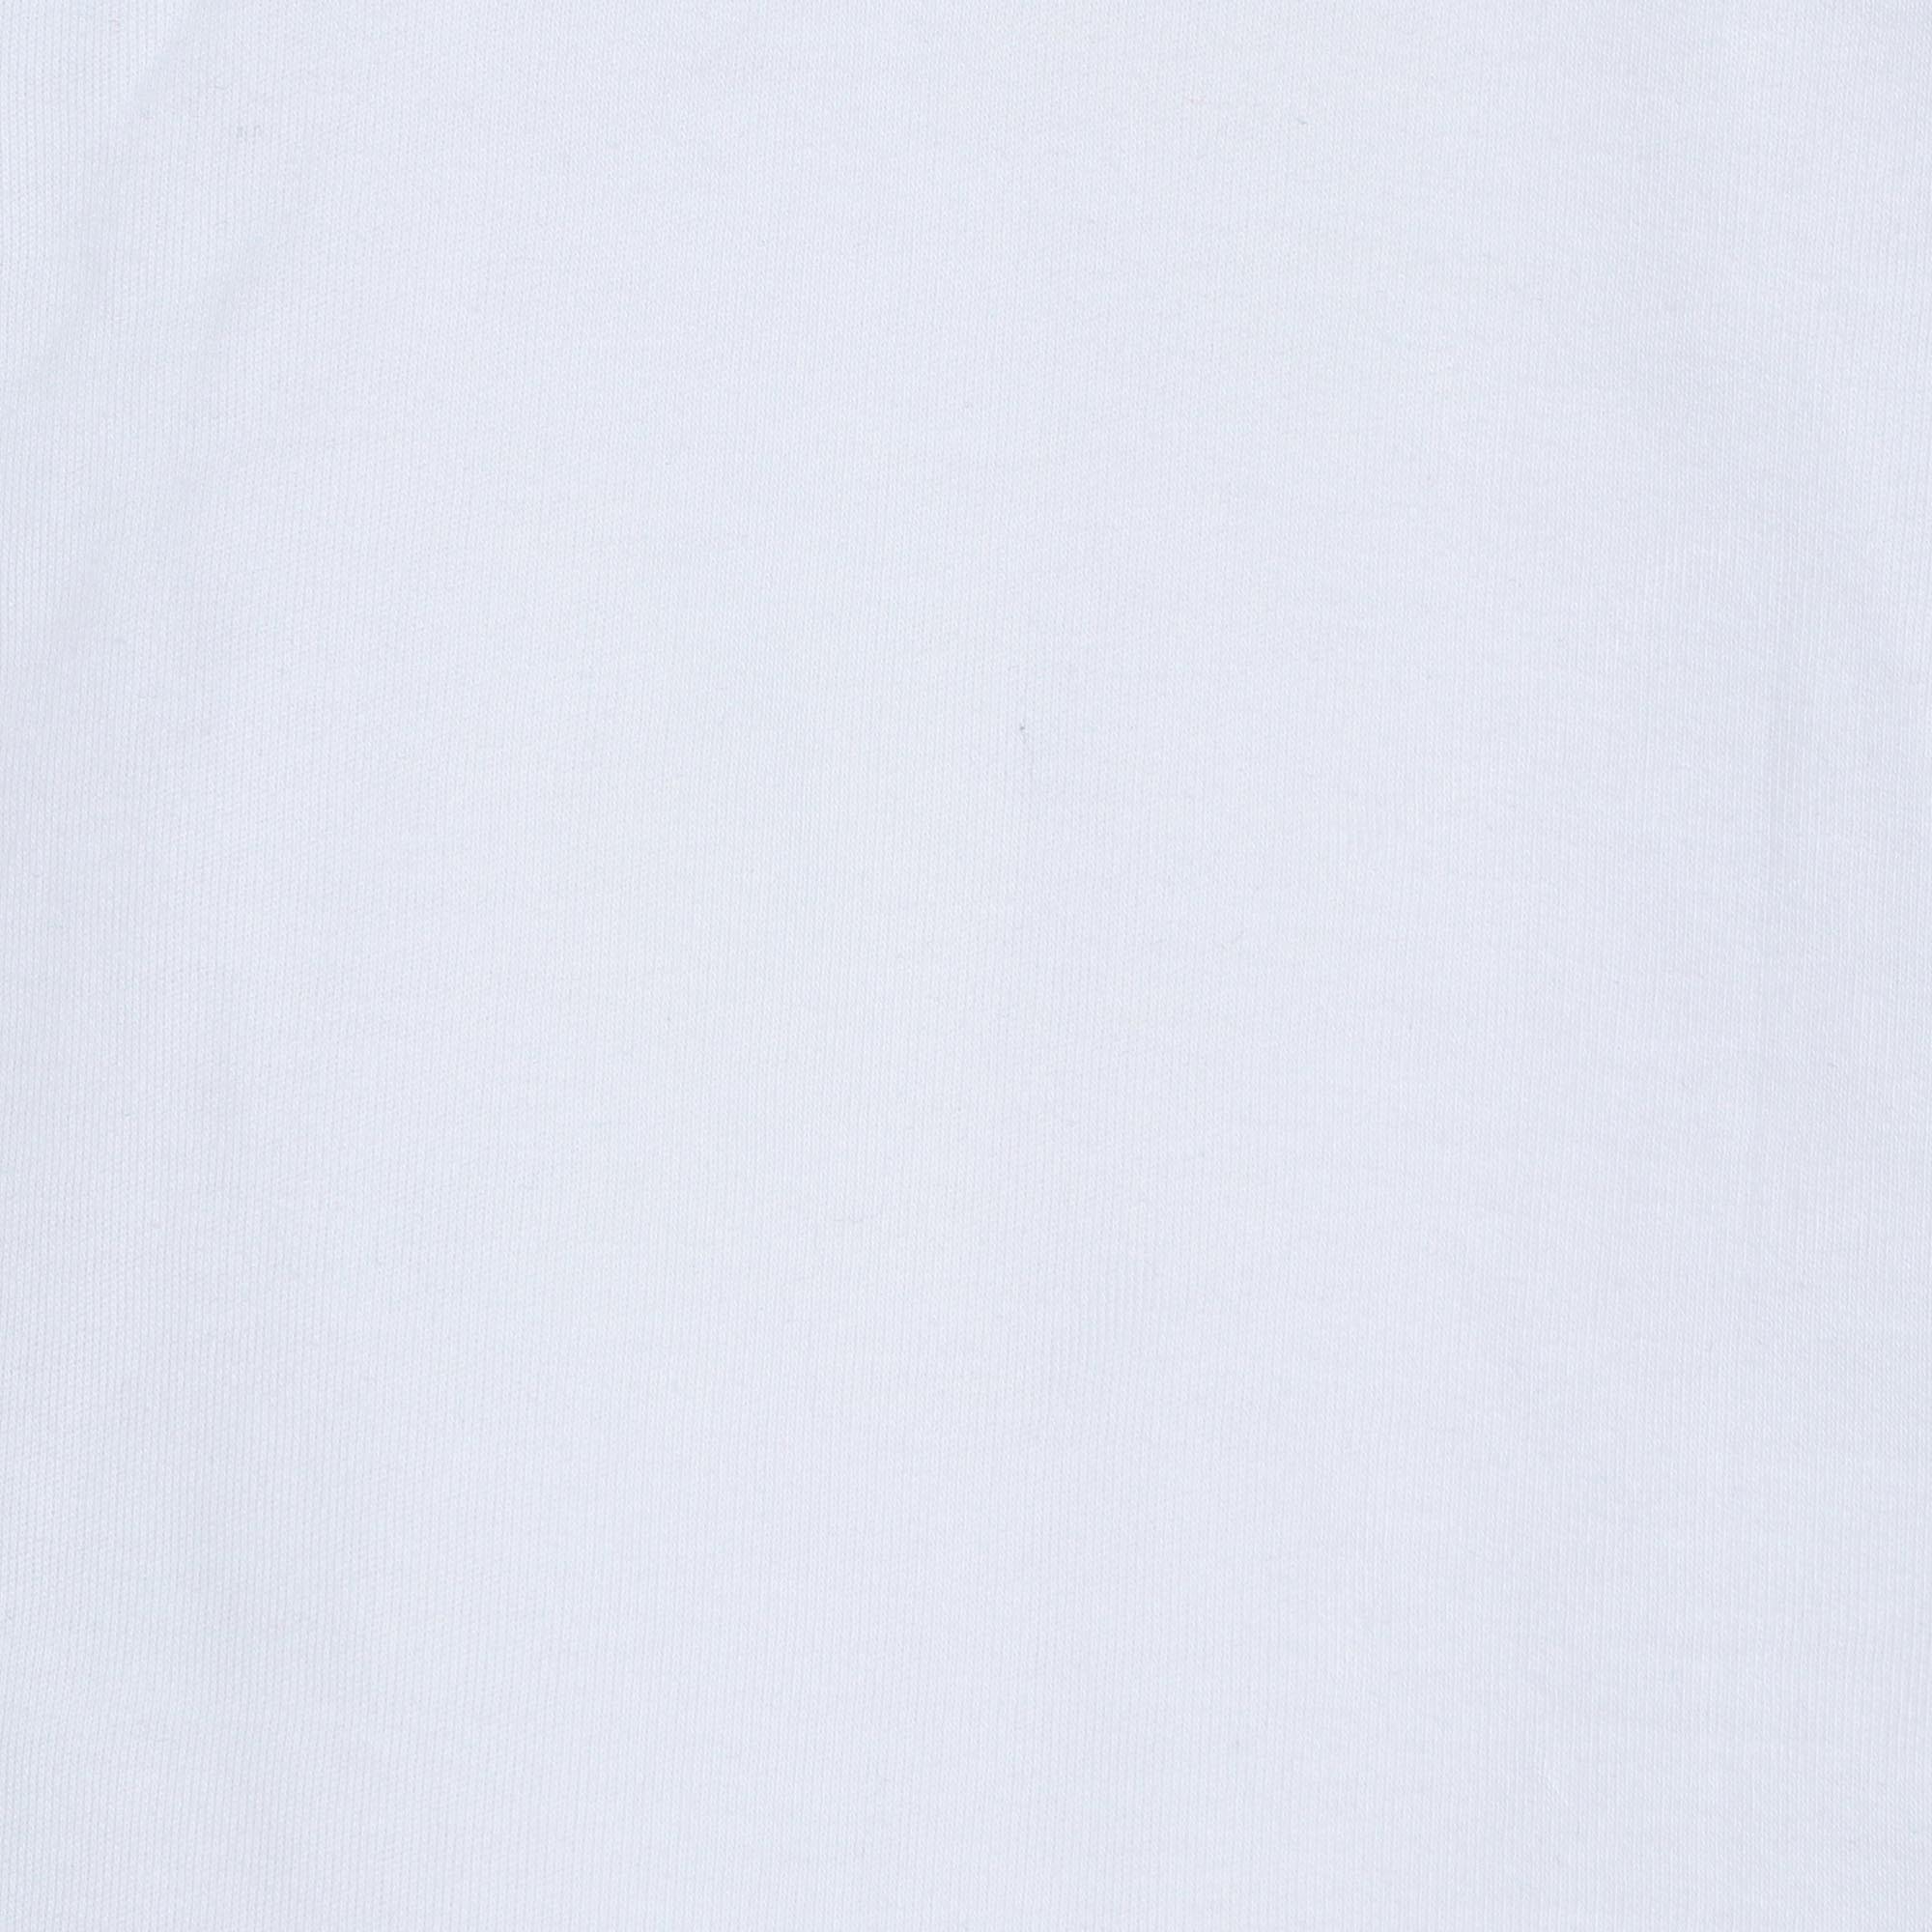 Мужская футболка-поло Diva Teks белая (DTD-07), цвет белый, размер 52-54 - фото 6